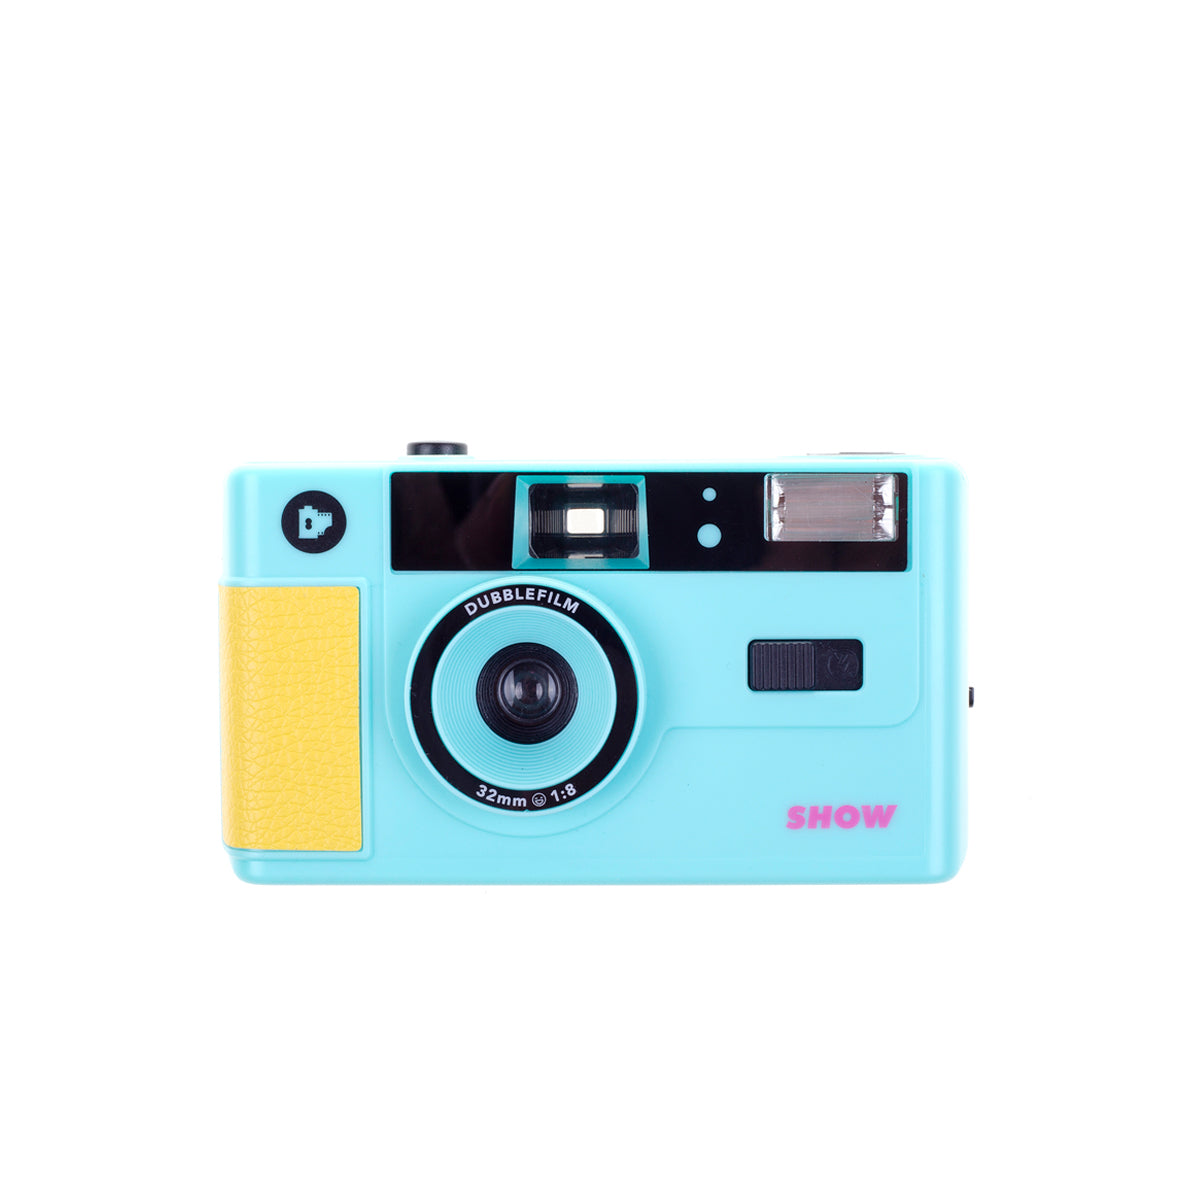 Caméra SHOW de Dubblefilm - Turquoise